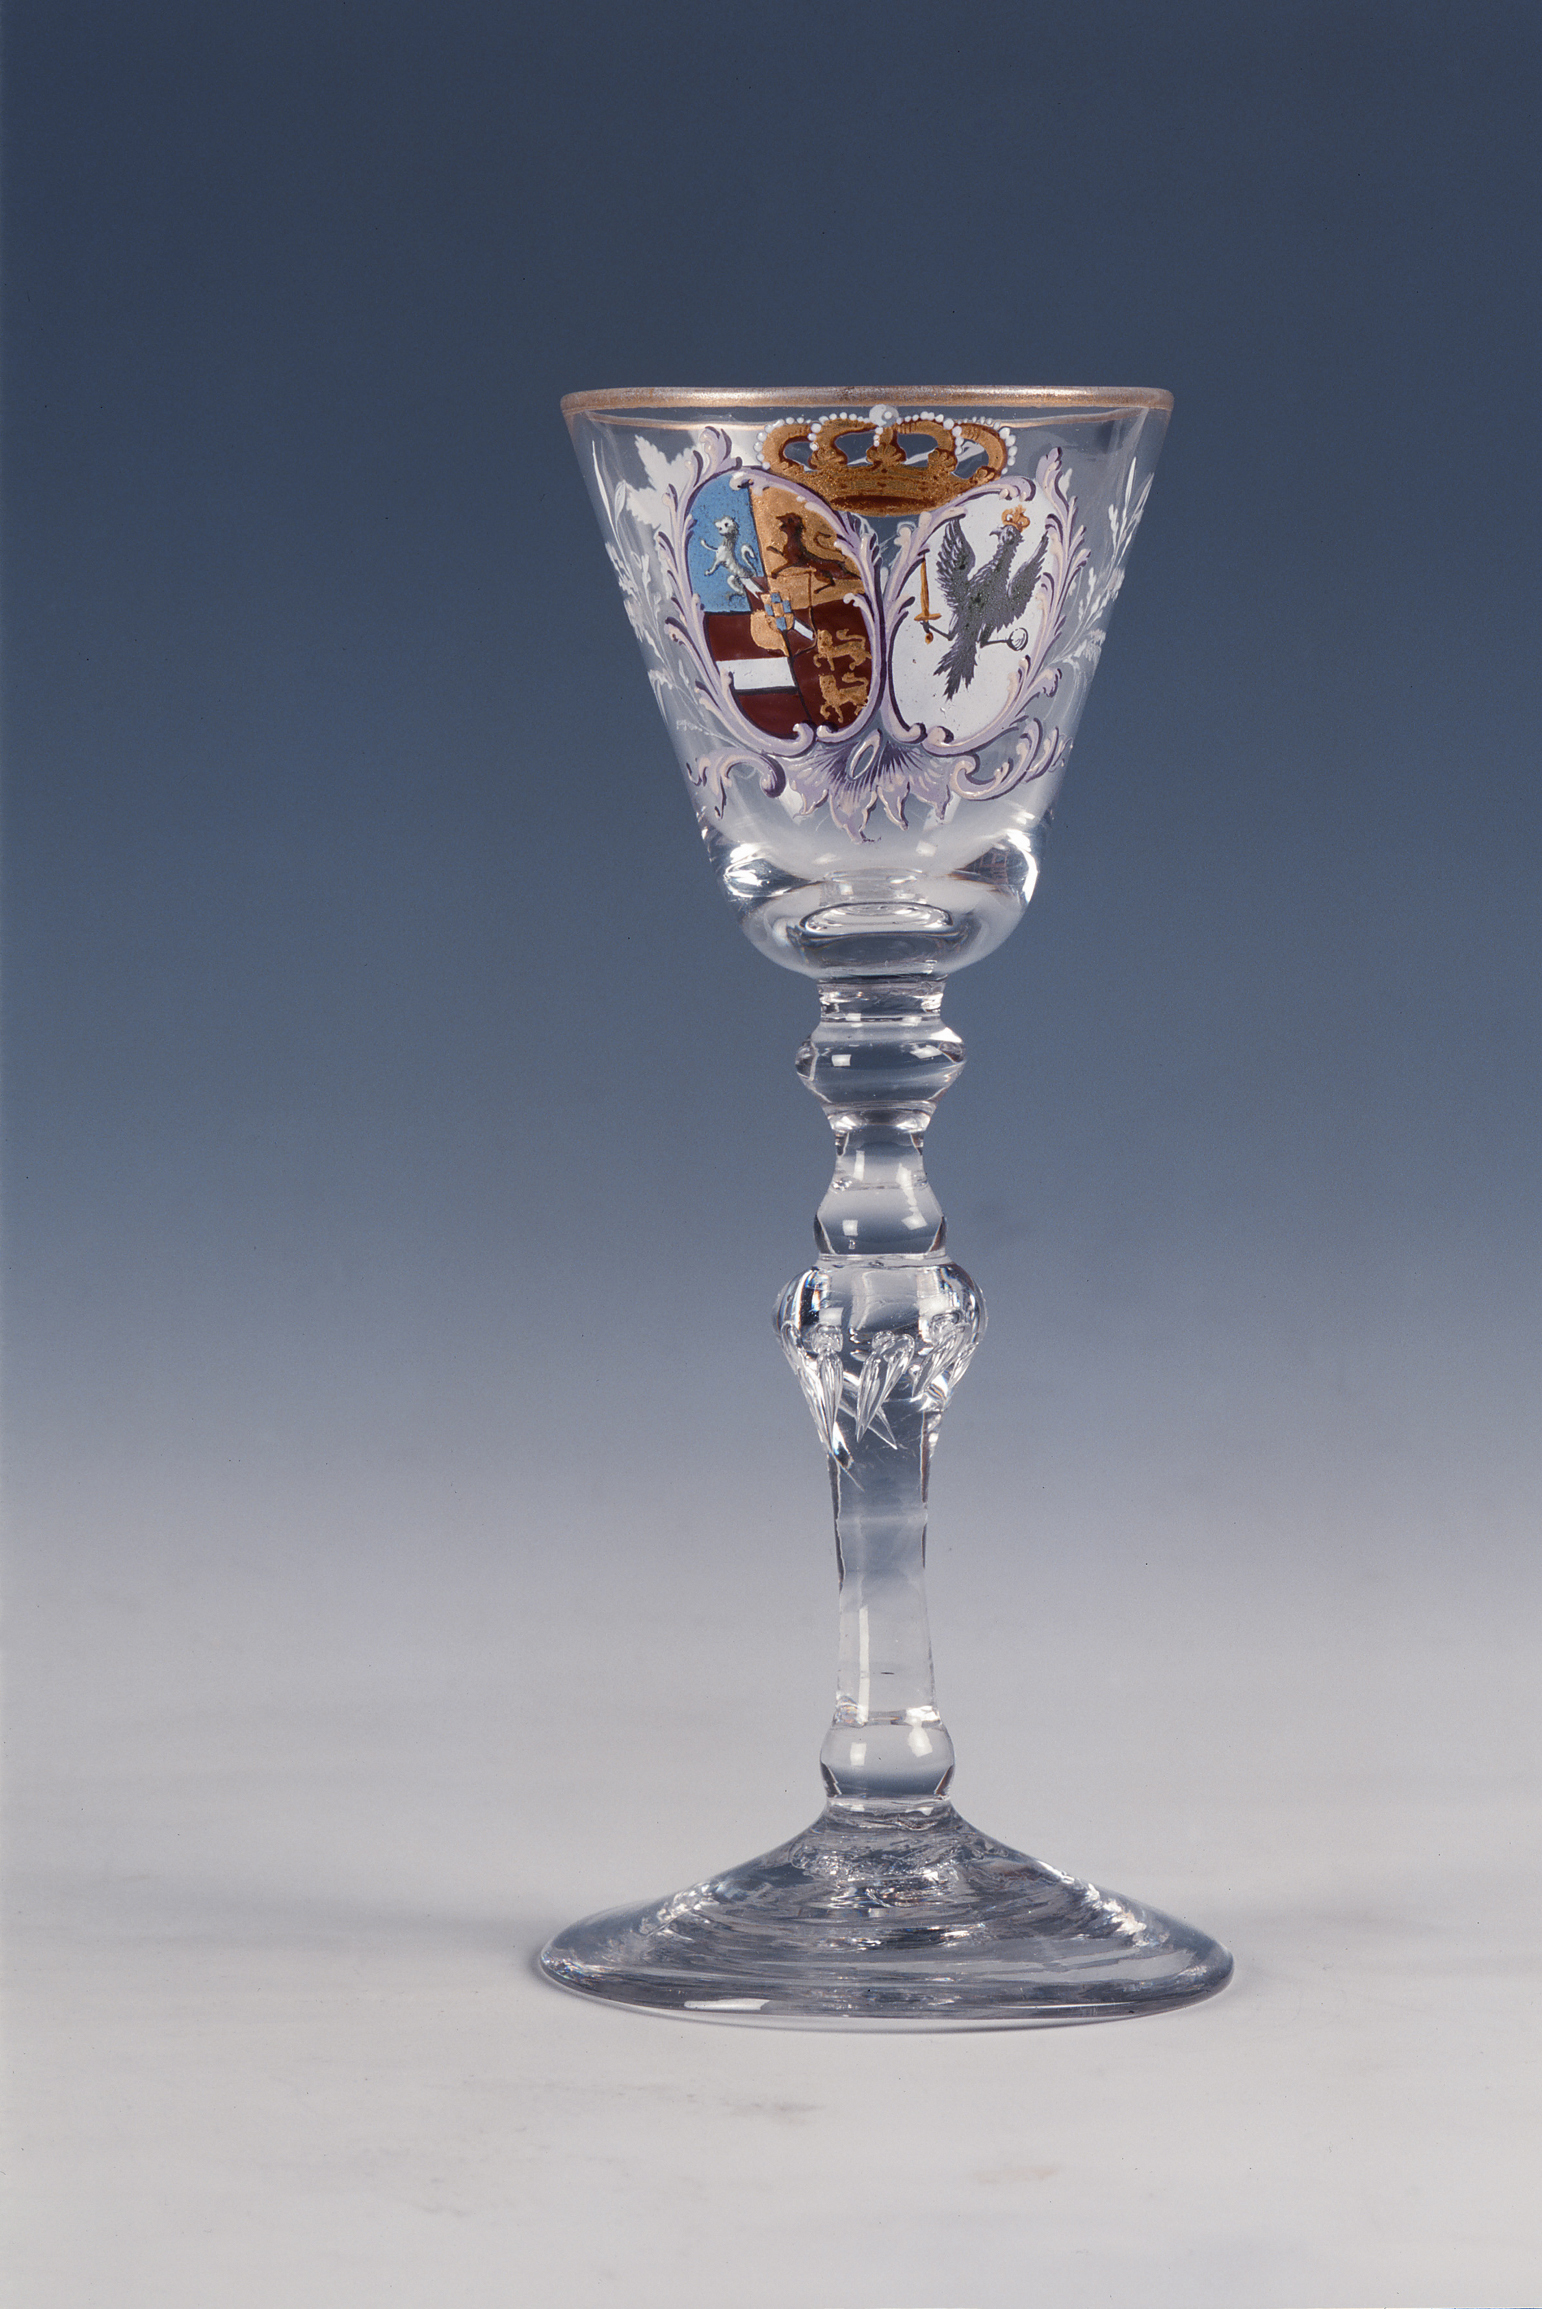 Kelkglas, (emaille-)beschilderd met wapens van Stadhouder Willem V en Wilhelmina van Pruisen